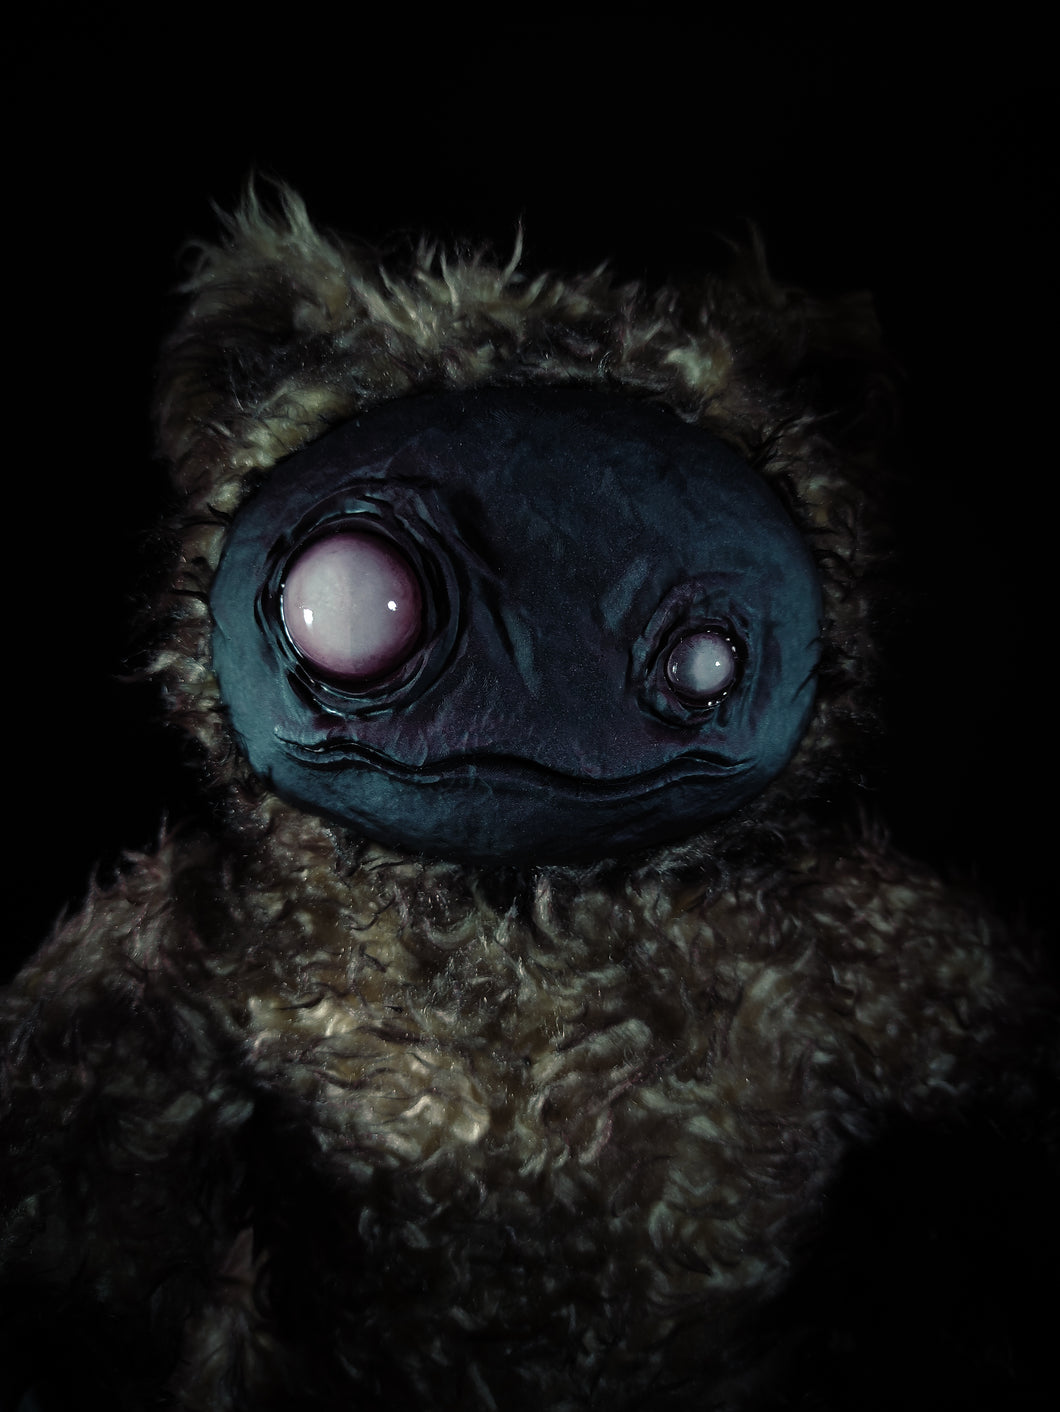 ZIPPO: Darkly Deranged Ver. - Monster Art Doll Plush Toy